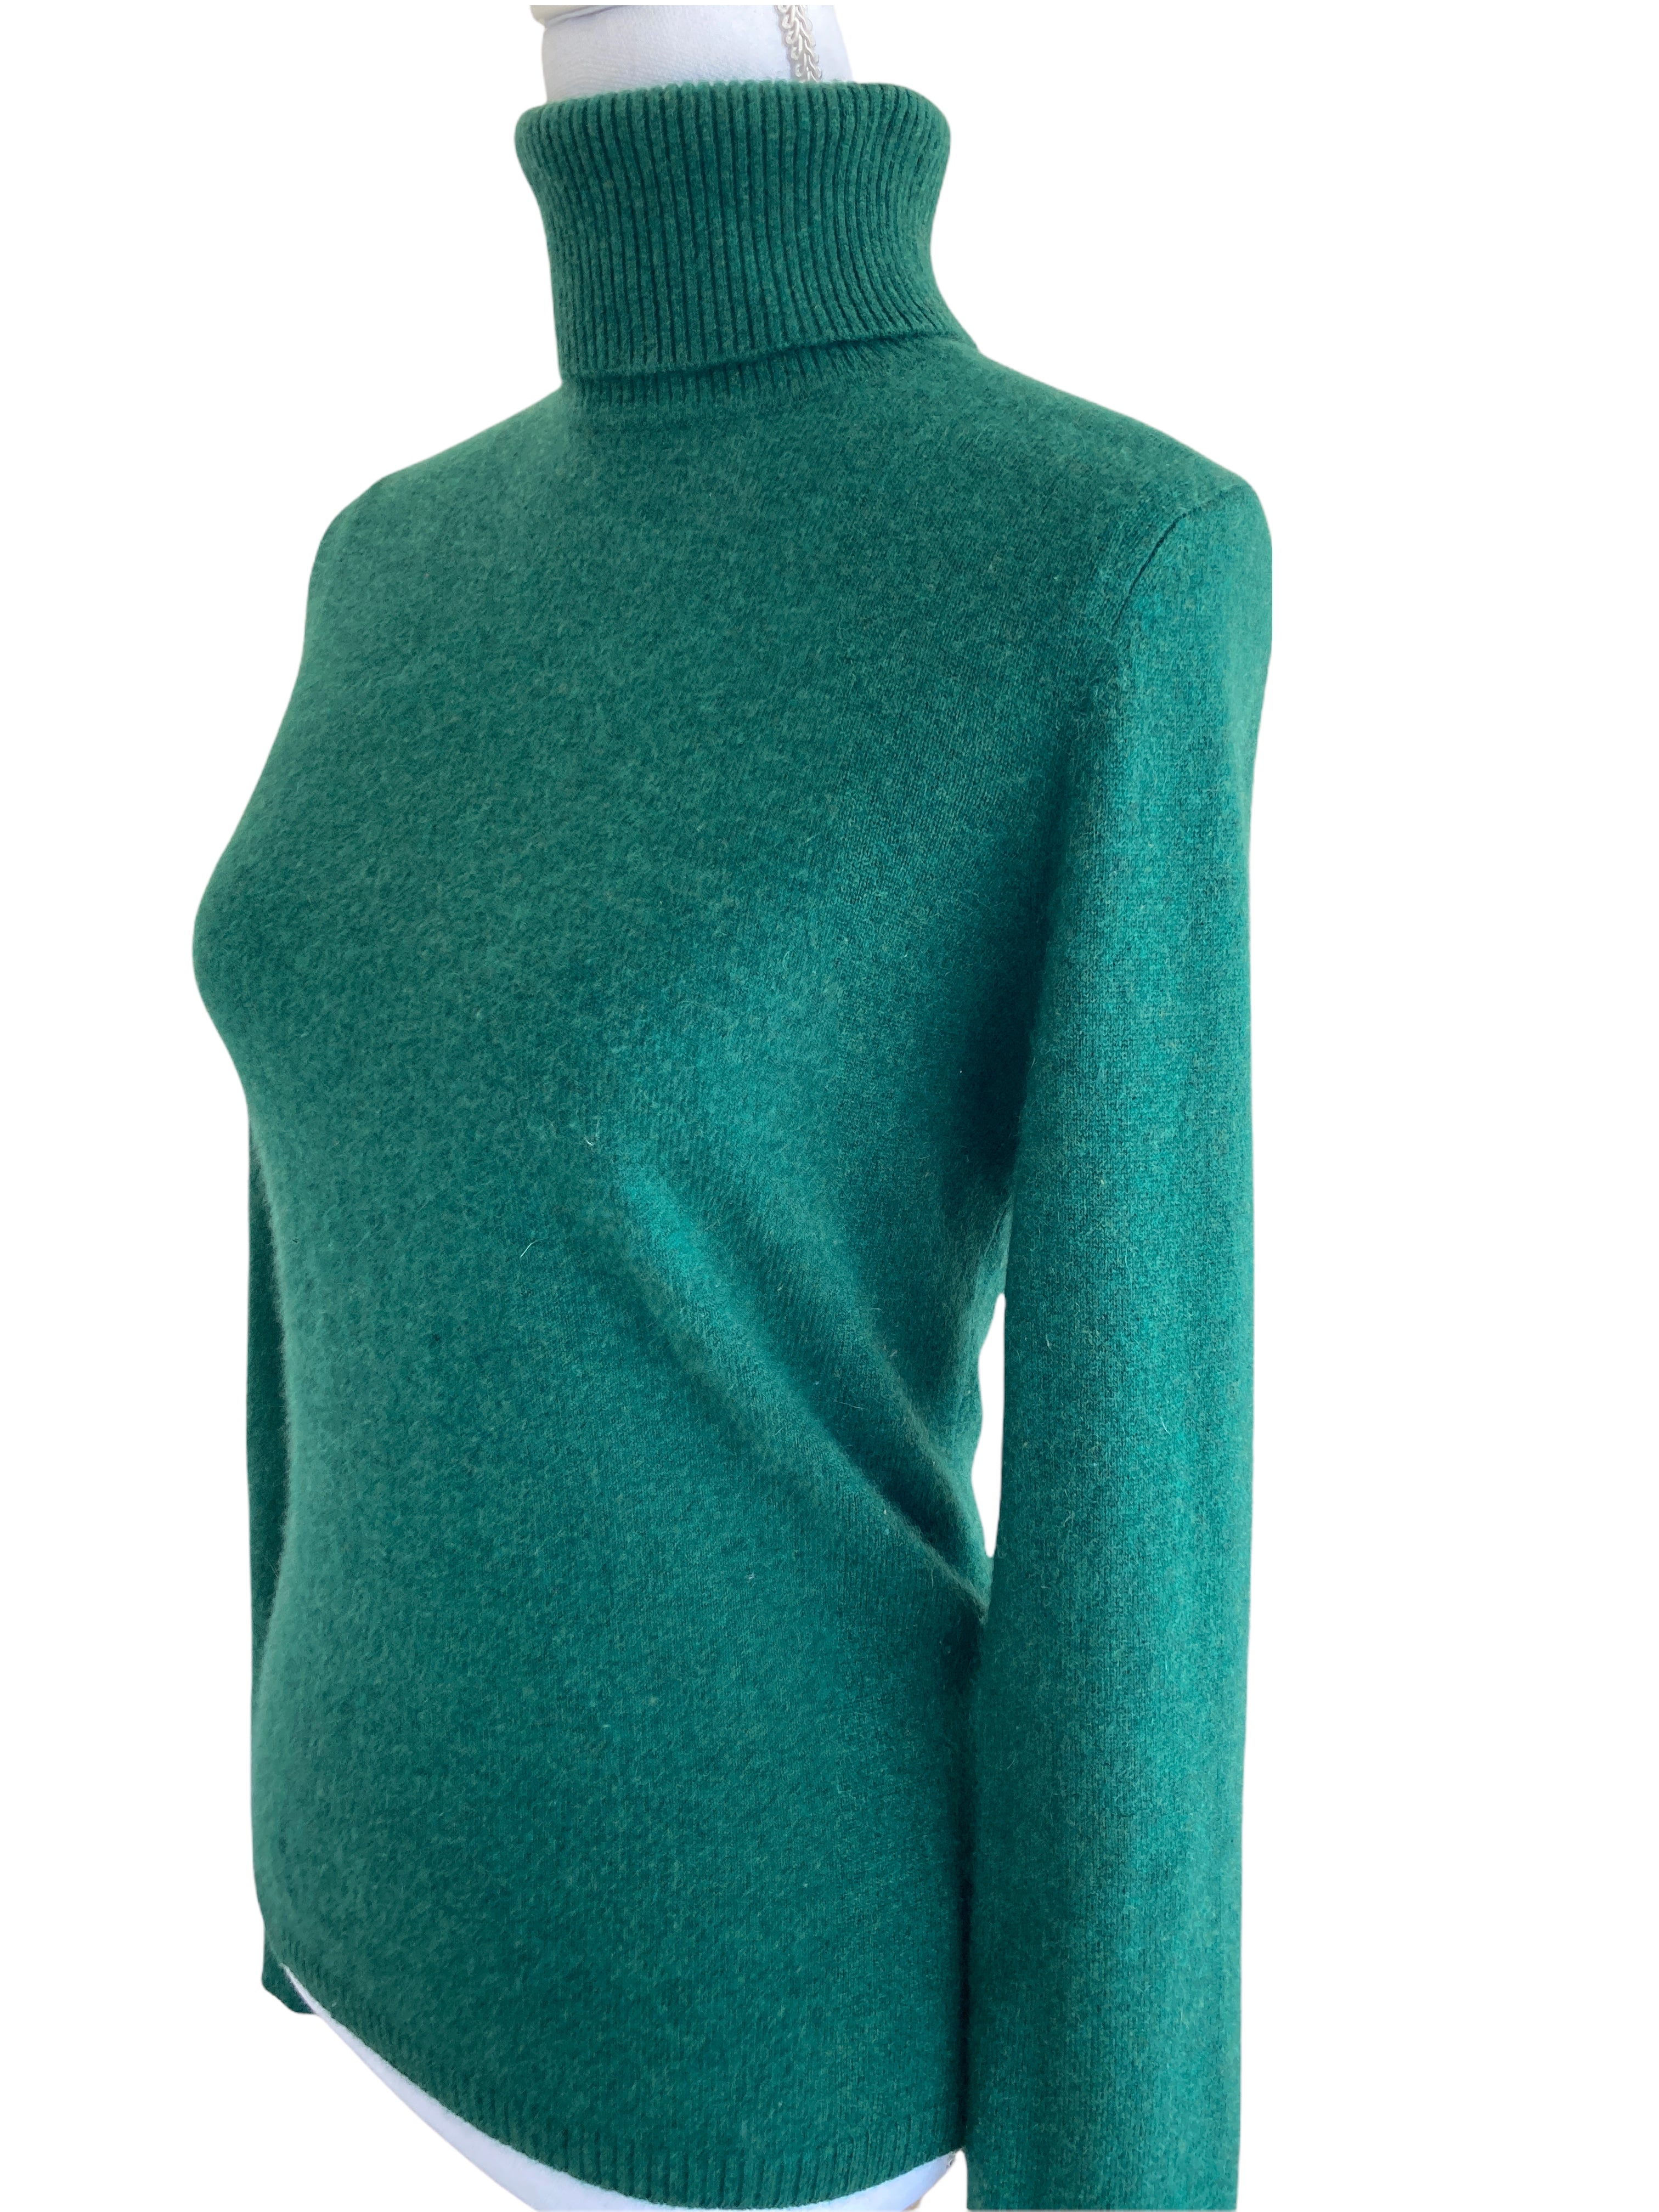 Uniqlo Green Cashmere Sweater, S